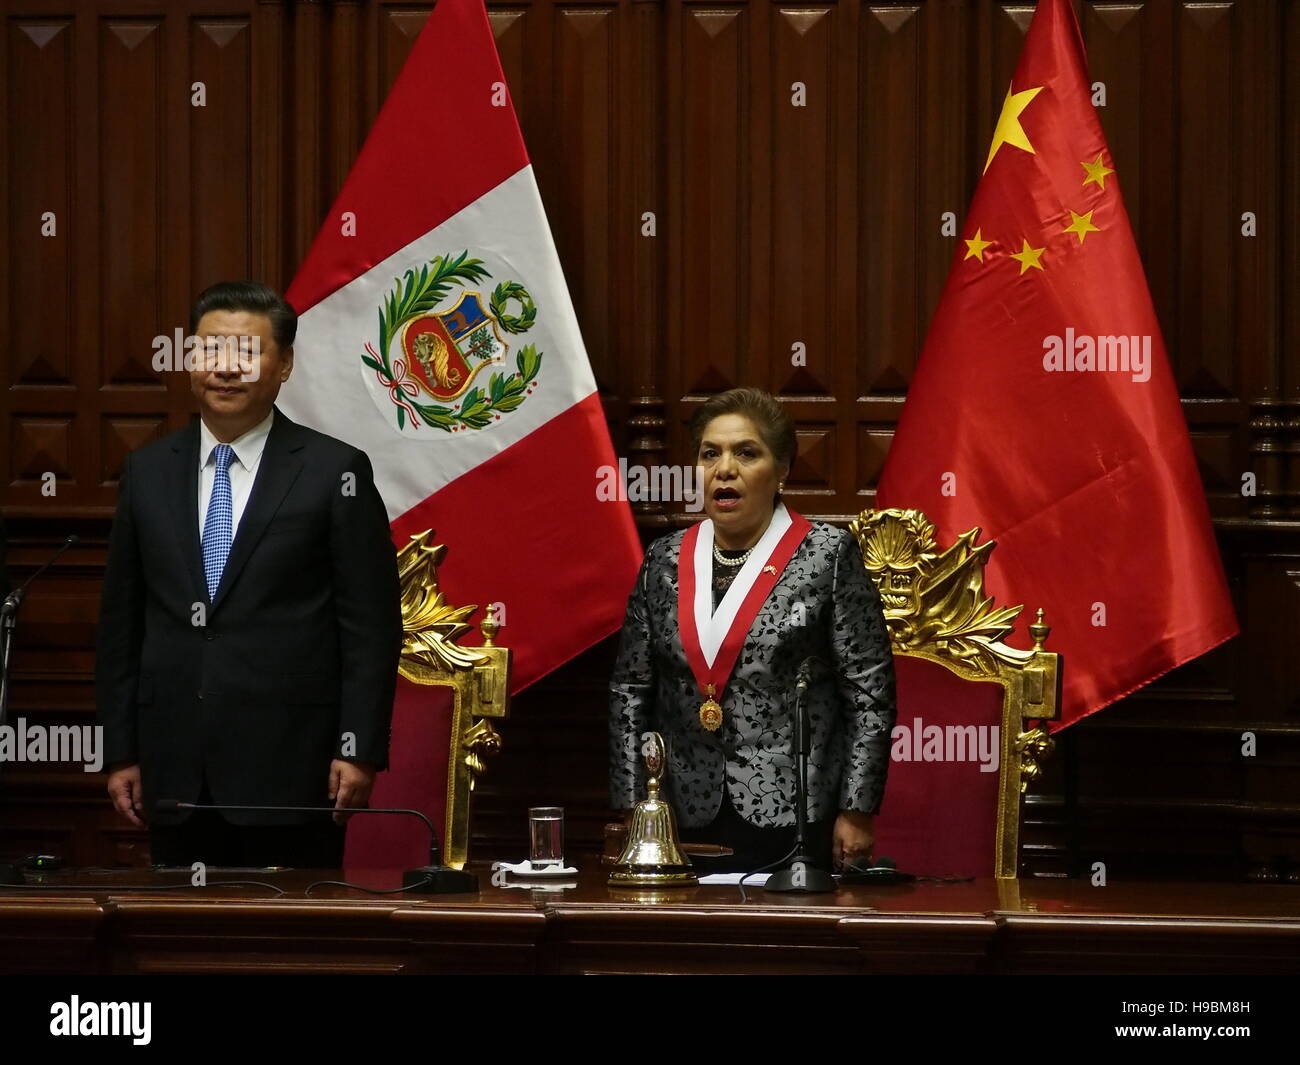 Le Président de la République populaire de Chine, Xi Jinping, et Luz Salgado, président de la Congrès péruvien, dans une séance solennelle dans l'hémicycle. Xi Jinping a reçu la médaille d'honneur du Congrès de la République du Pérou, sur le degré de la Grande Croix, au cours de la visite d'État à la XXXIVE Sommet des dirigeants du Forum économique Asie-Pacifique (APEC 2016). © Agence de presse Fotoholica/Alamy Live News Banque D'Images